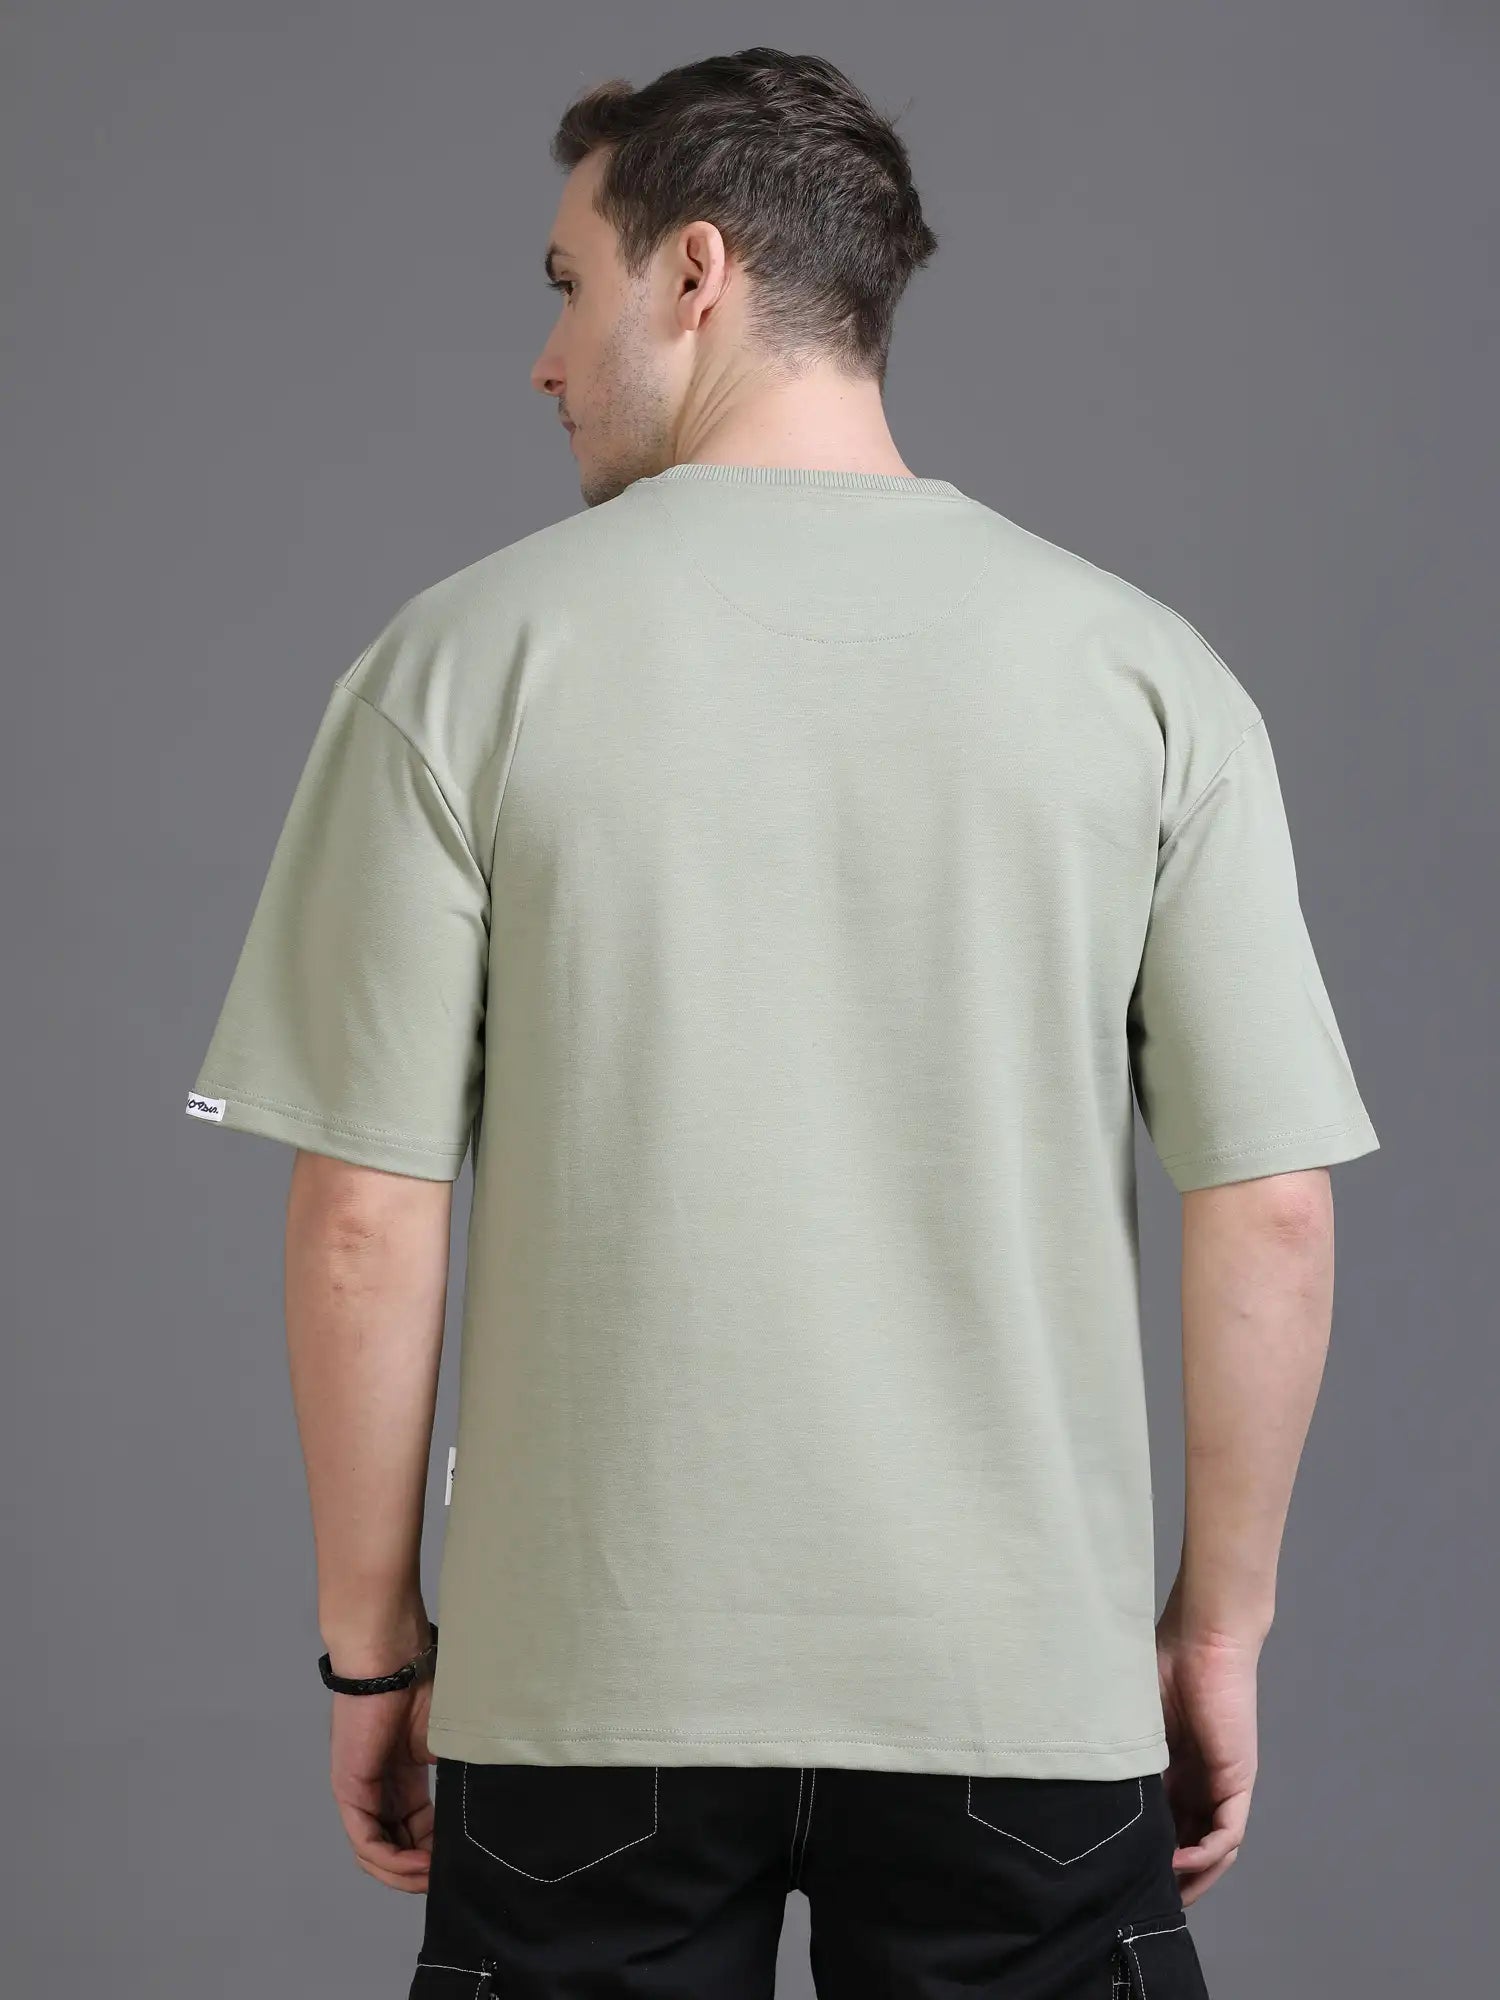 Green Drop Shoulder T Shirt for Men